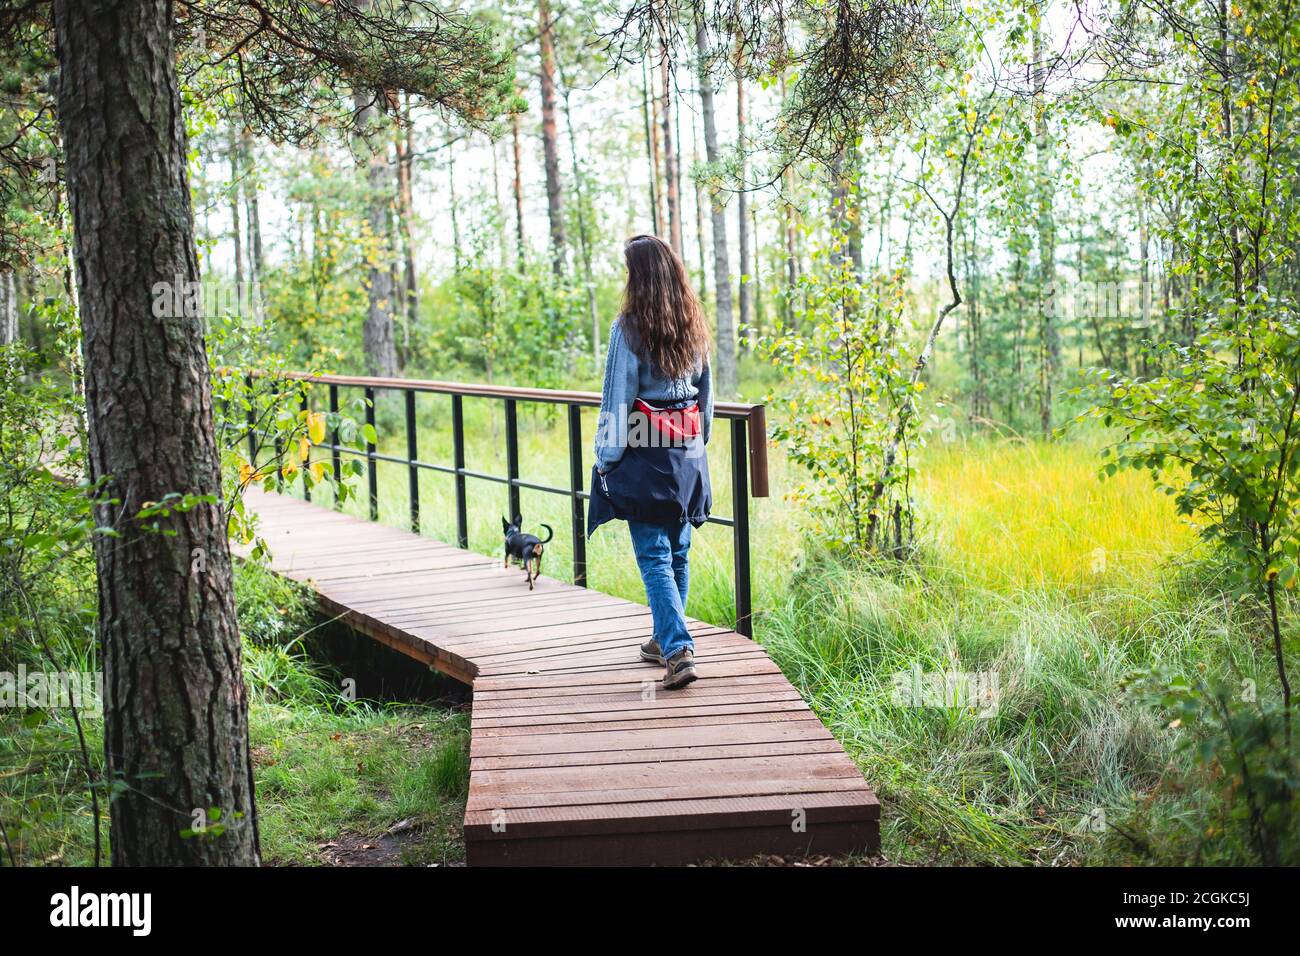 Vue d'été d'une passerelle en bois sur le territoire du marécage de Sestroretsk, chemin écologique - itinéraire des allées posées dans le marécage, réserve 'Sestroretsk marécage', Banque D'Images